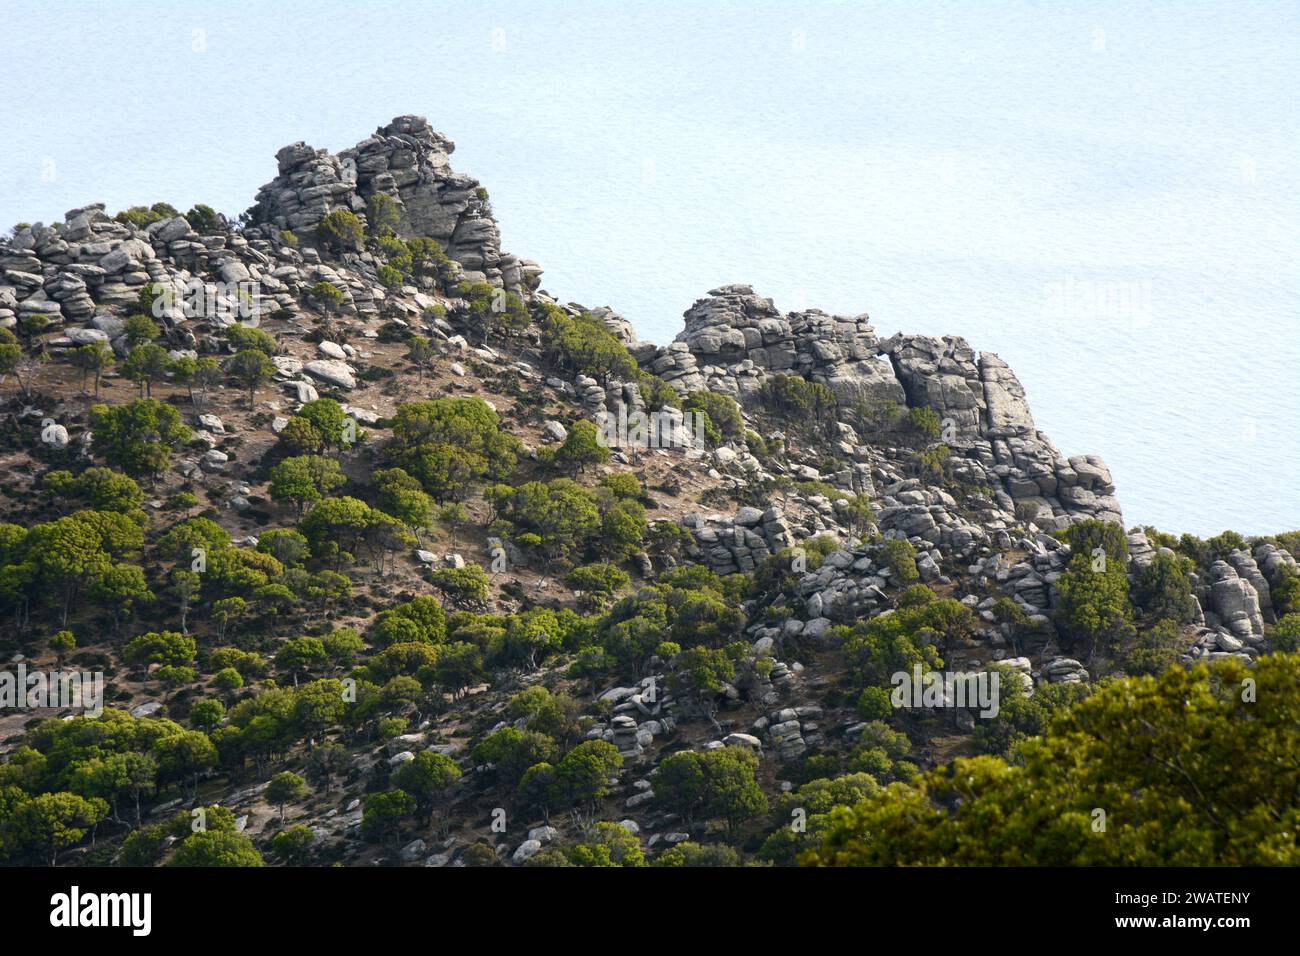 Une montagne rocheuse escarpée et des falaises perchées sur la mer Égée, sur la côte sud de l'île grecque d'Ikaria, près de Karkinagri, Grèce. Banque D'Images